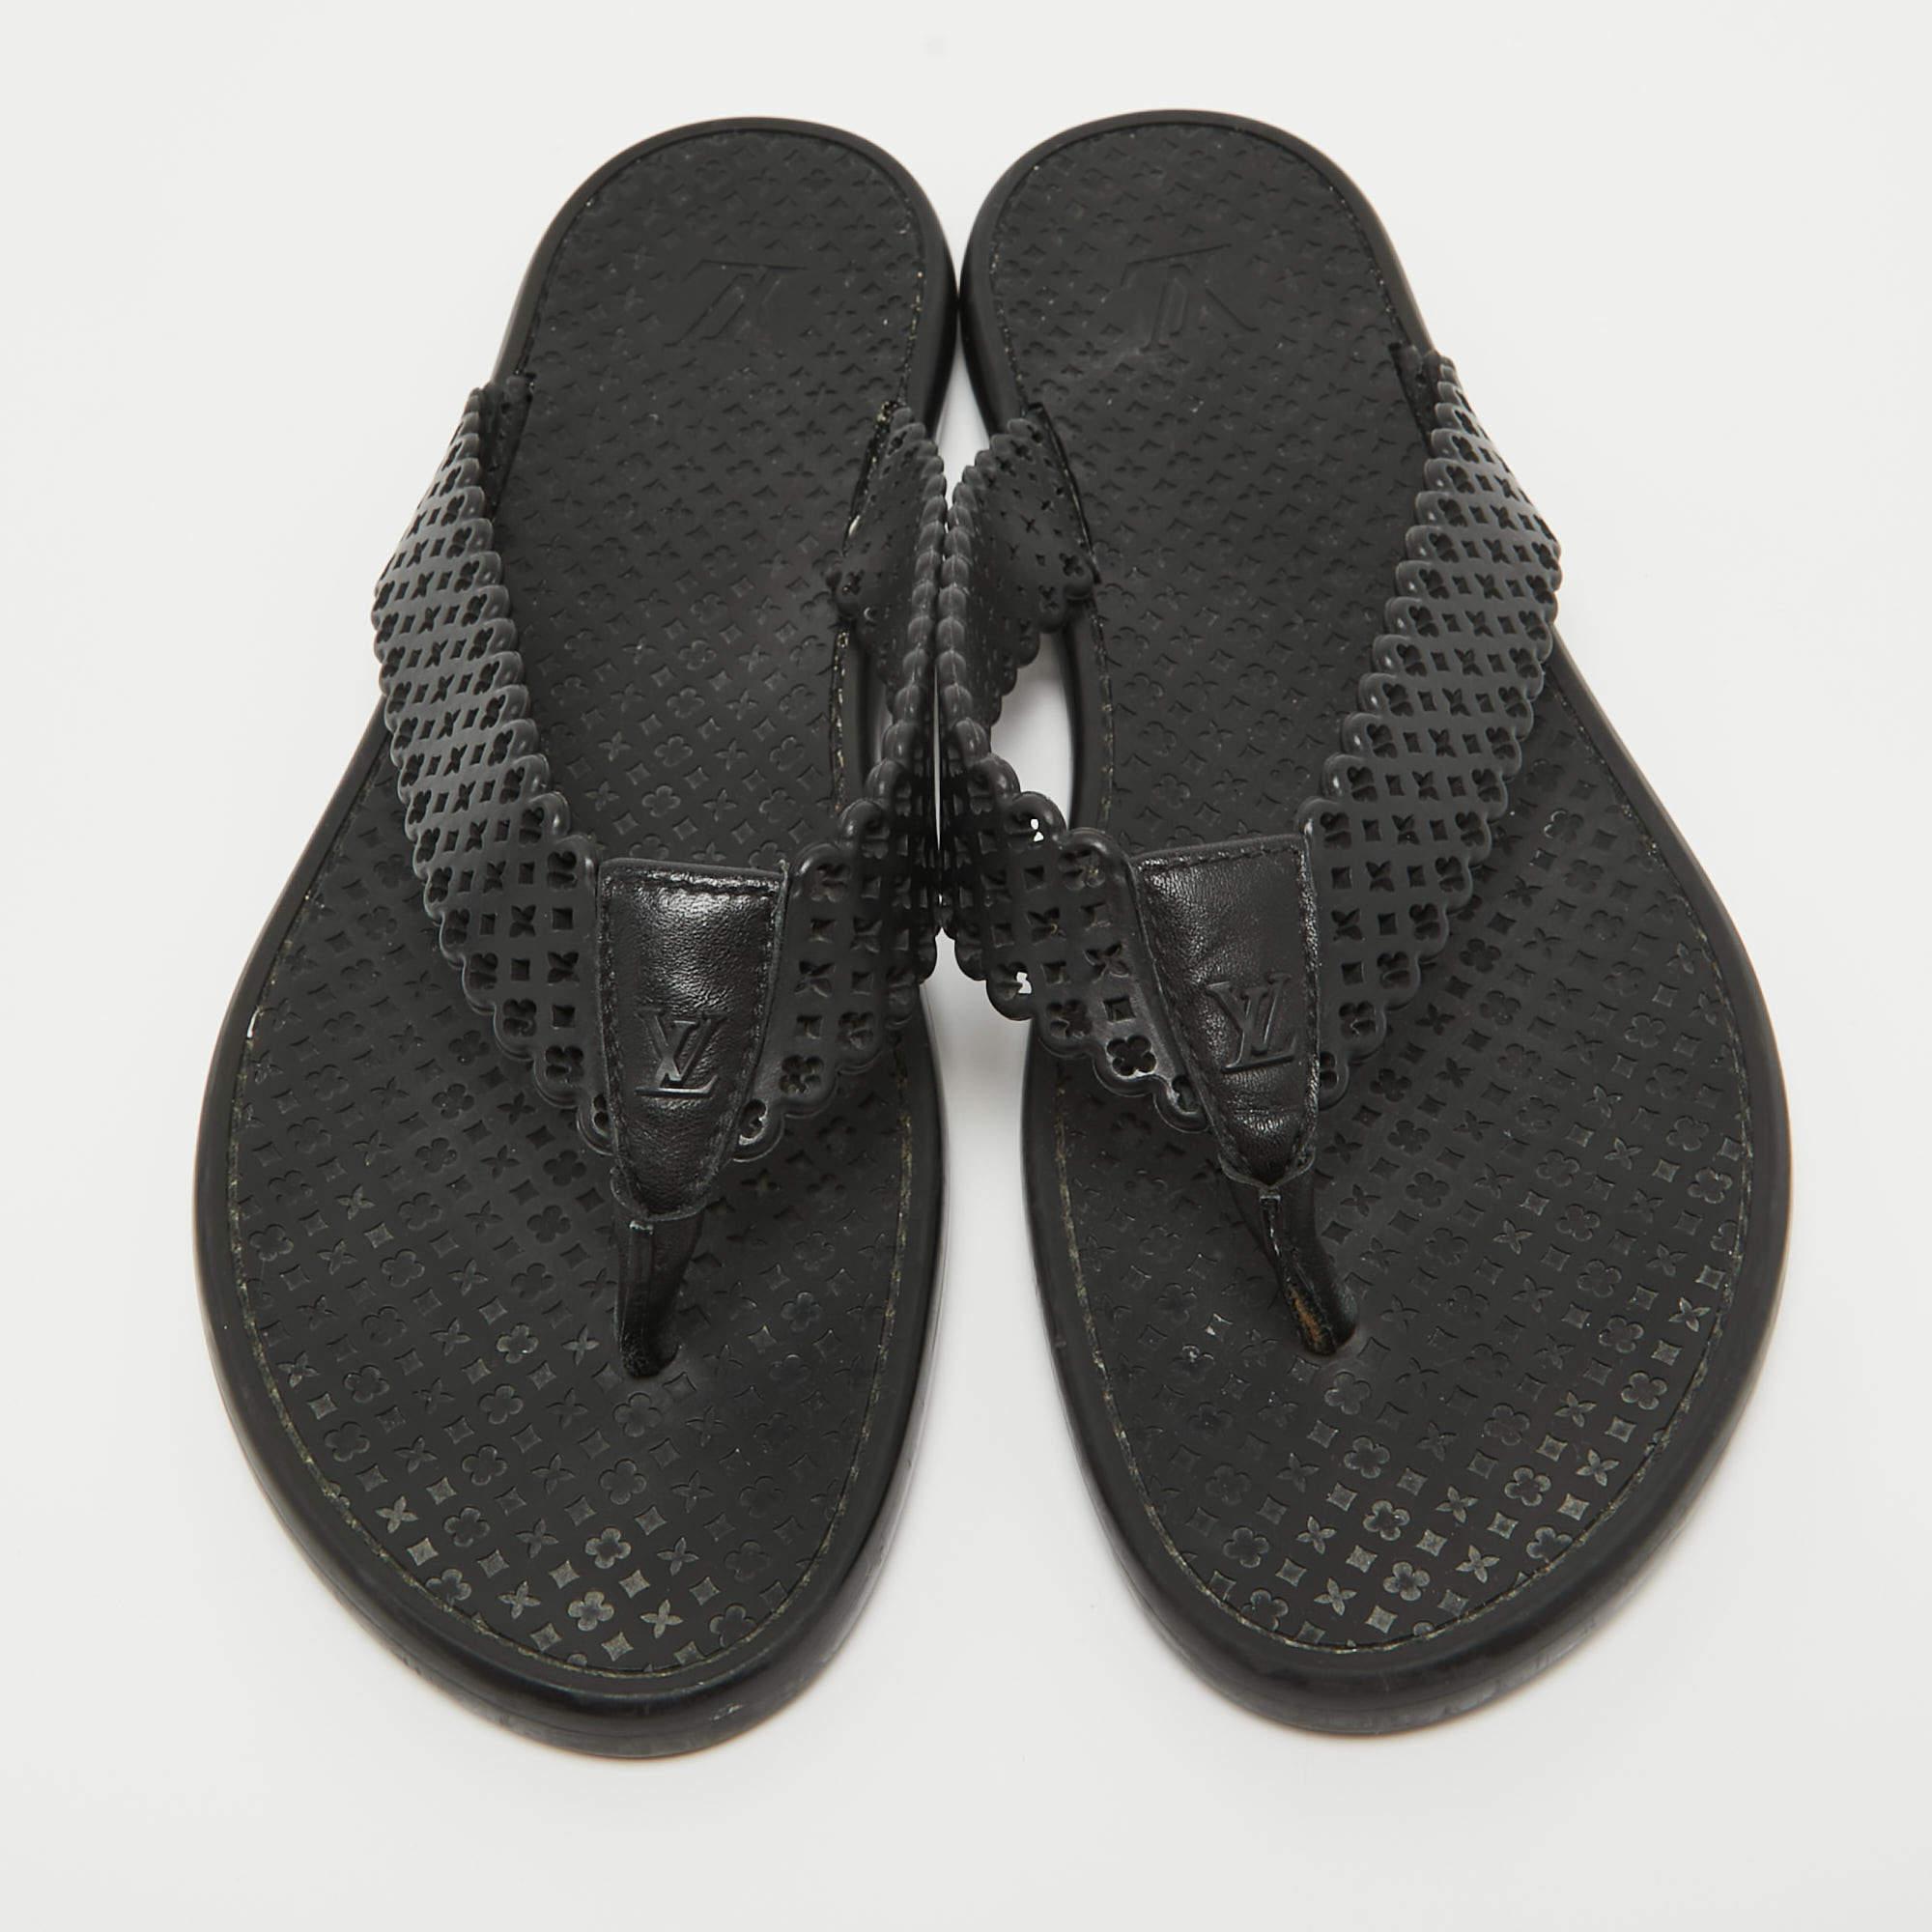 Portez ces sandales de créateur pour rehausser n'importe quelle tenue. Ils sont polyvalents, chics et peuvent être facilement coiffés. Fabriquées avec des matériaux de qualité, ces sandales sont bien construites et durables.

Comprend
Sac à